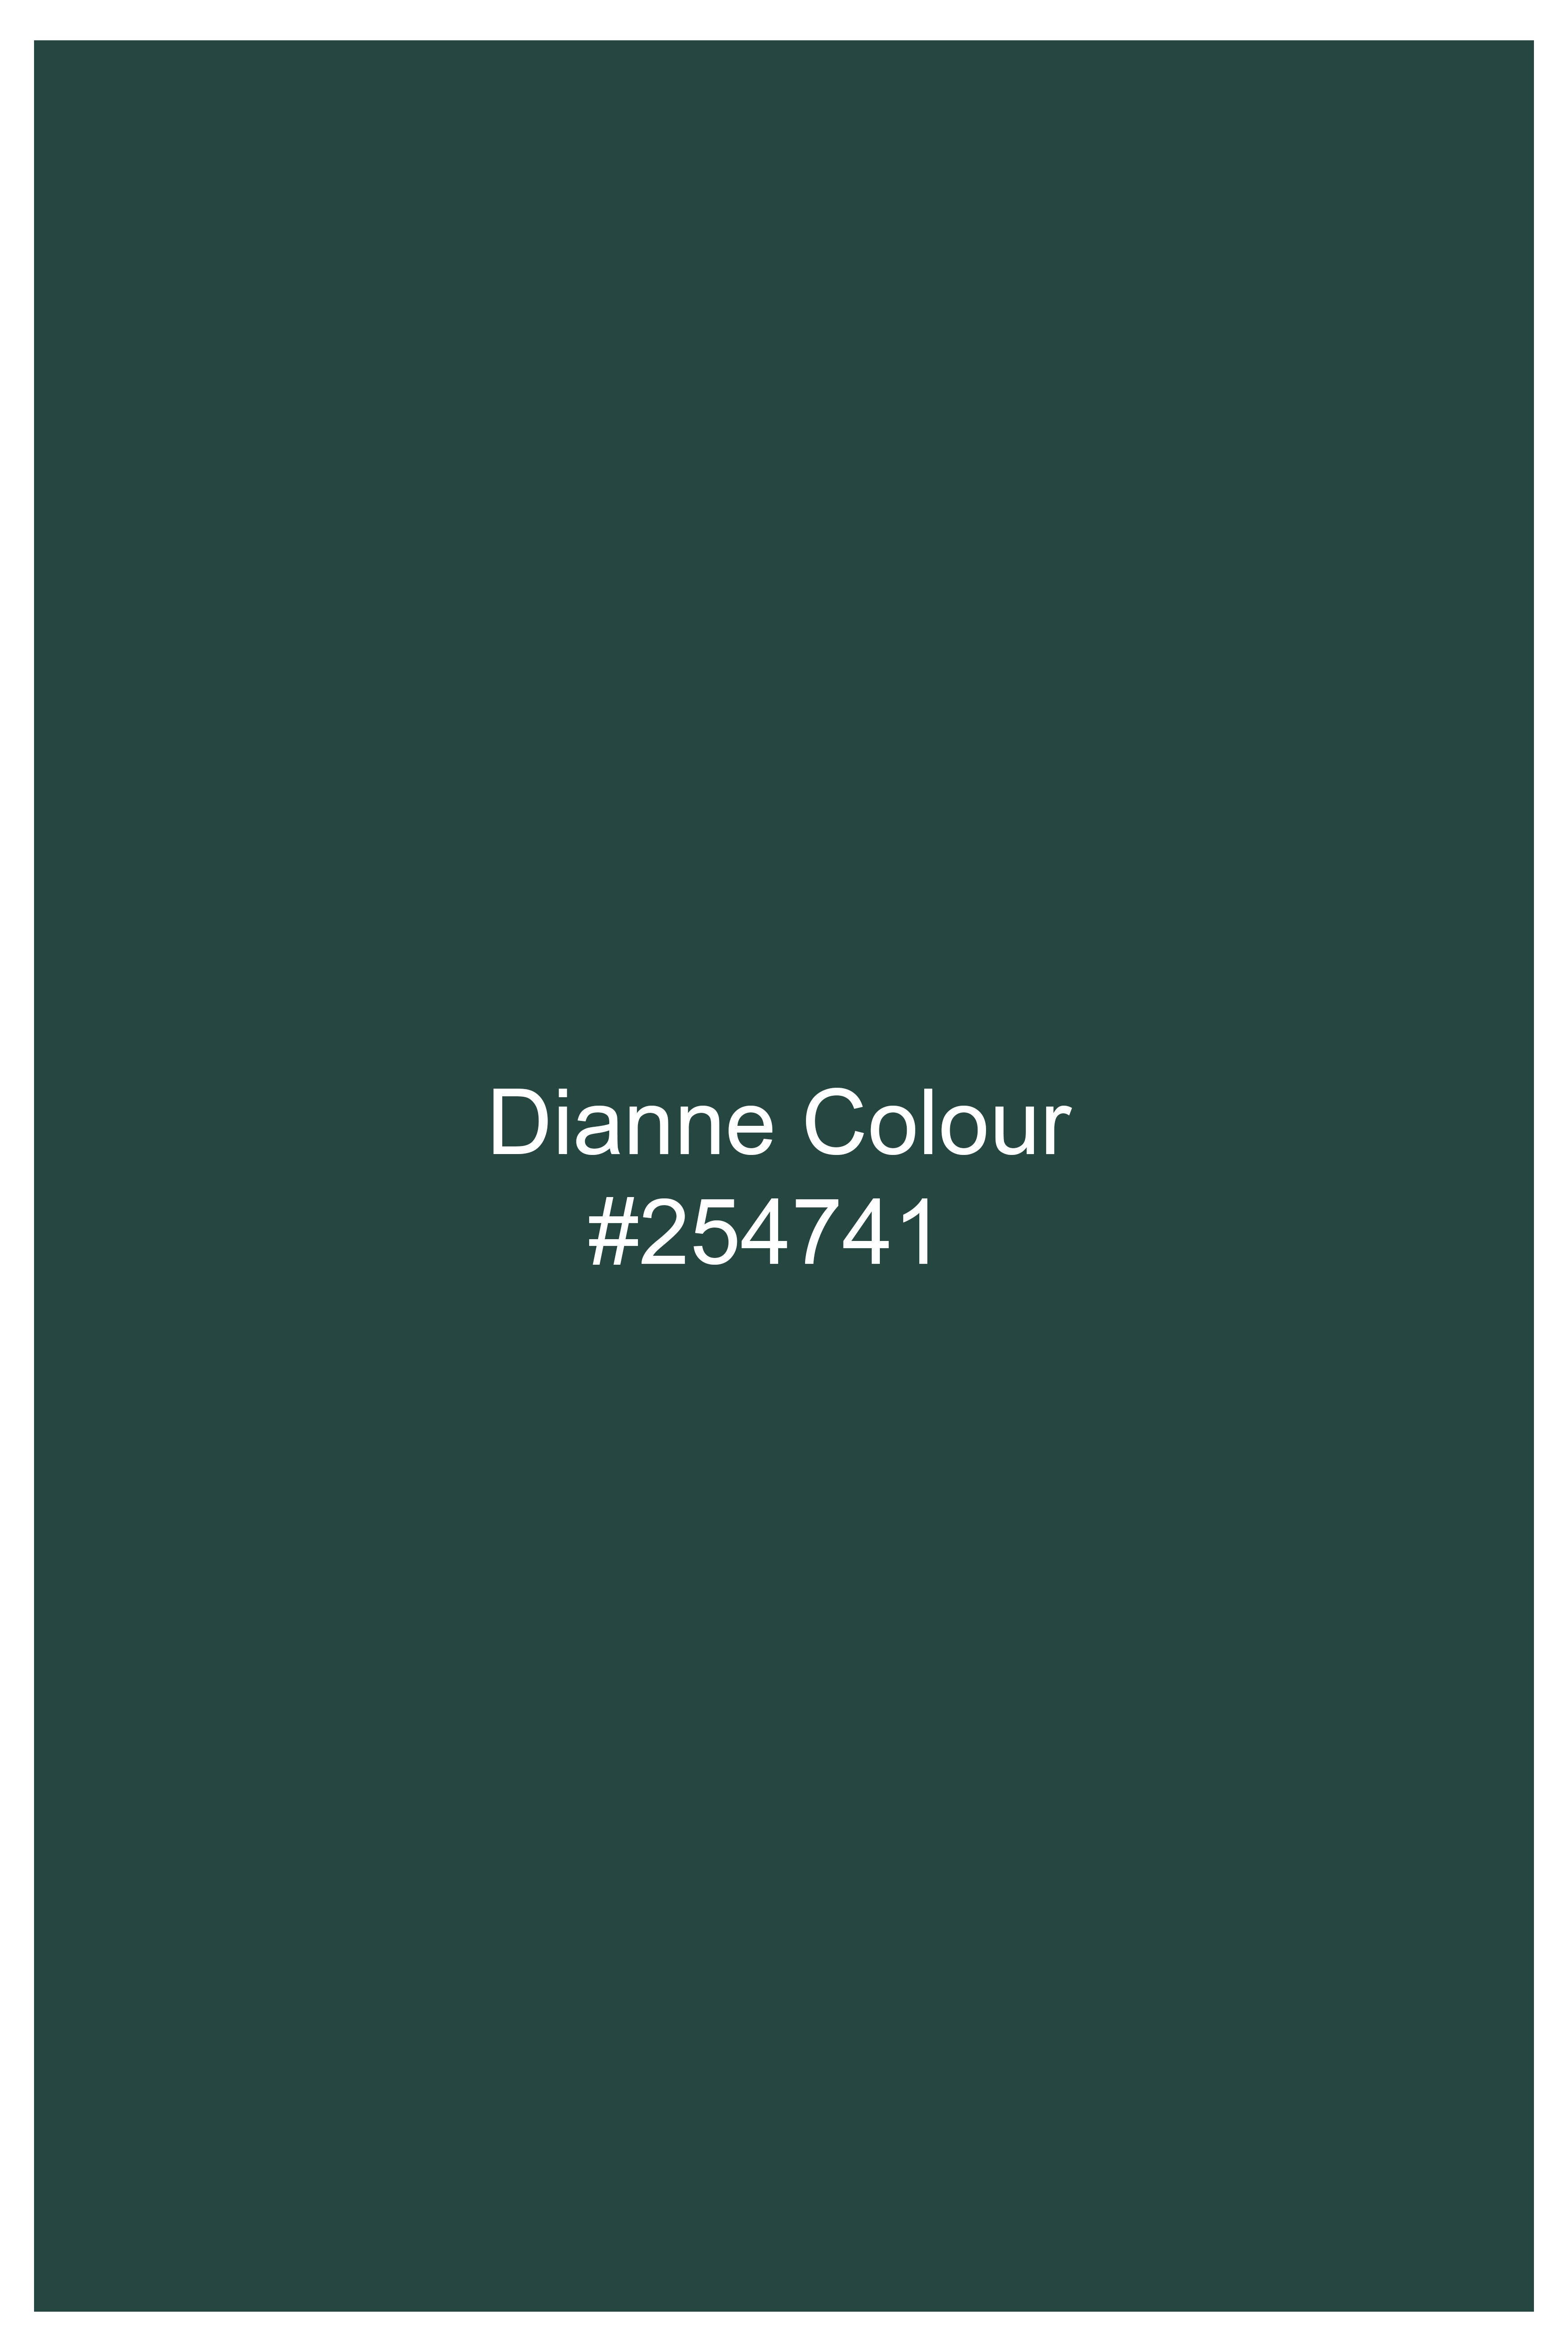 Dianne Green Wool Rich Single Breasted Blazer ,BL3001-SB-36, BL3001-SB-38, BL3001-SB-40, BL3001-SB-42, BL3001-SB-44, BL3001-SB-46, BL3001-SB-48, BL3001-SB-50, BL3001-SB-52, BL3001-SB-54, BL3001-SB-56, BL3001-SB-58, BL3001-SB-60